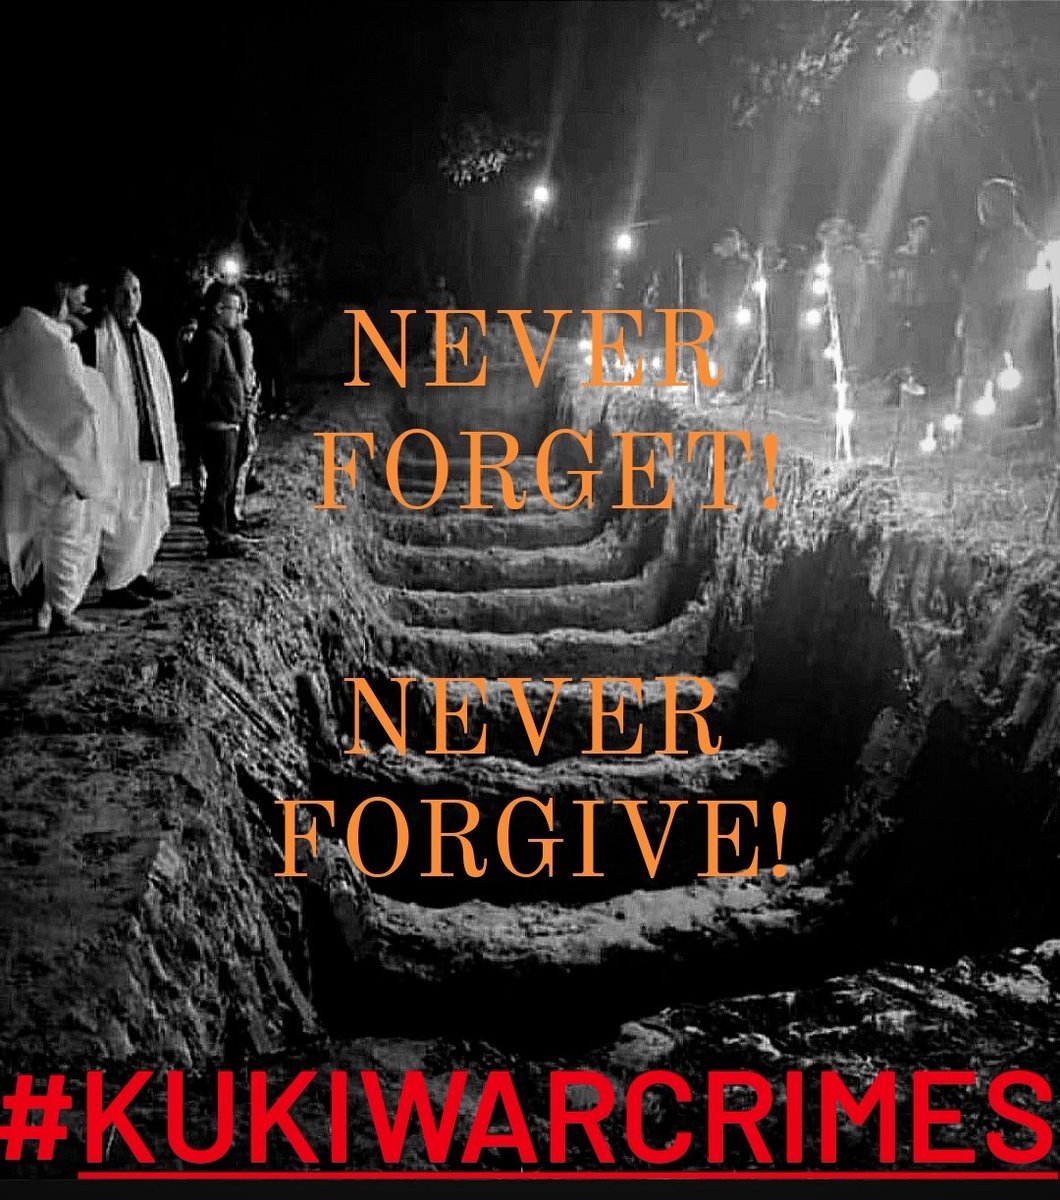 NEVER FORGET, NEVER FORGIVE  #Kukiwarcrimes